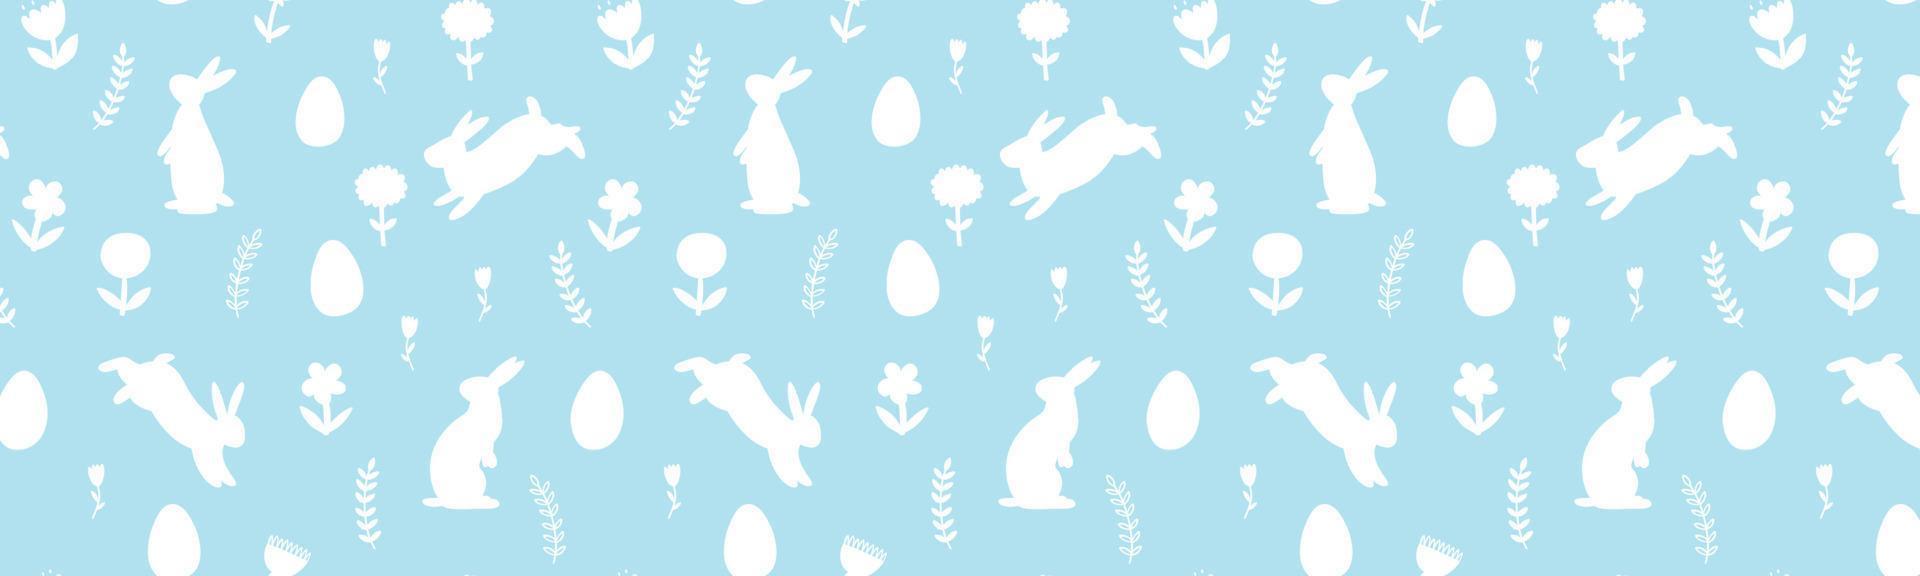 Pasqua bandiera con coniglietti, fiori e Pasqua uova. vettore sfondo con sagome di animali e impianti